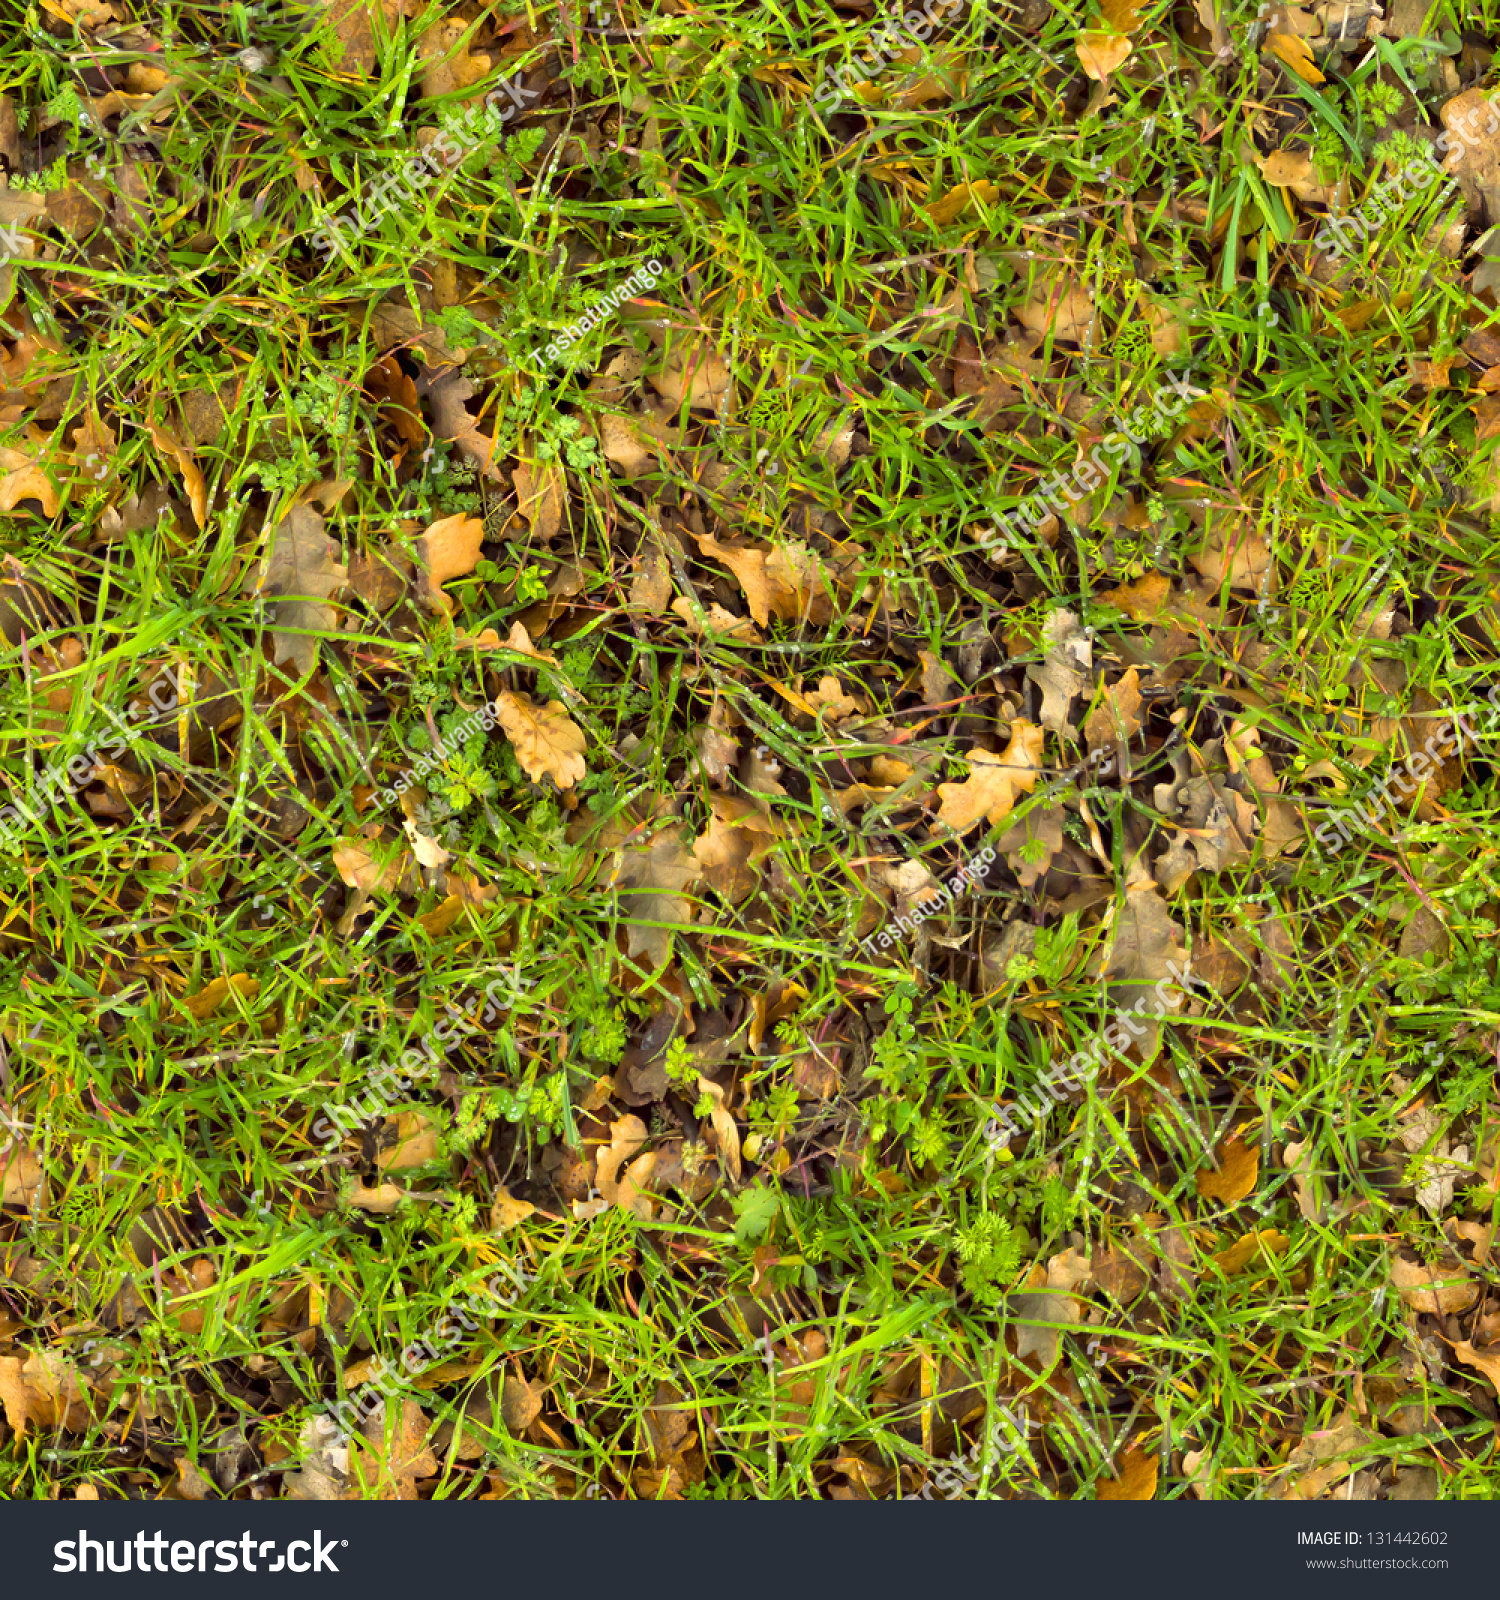 Fallen grass texture photo